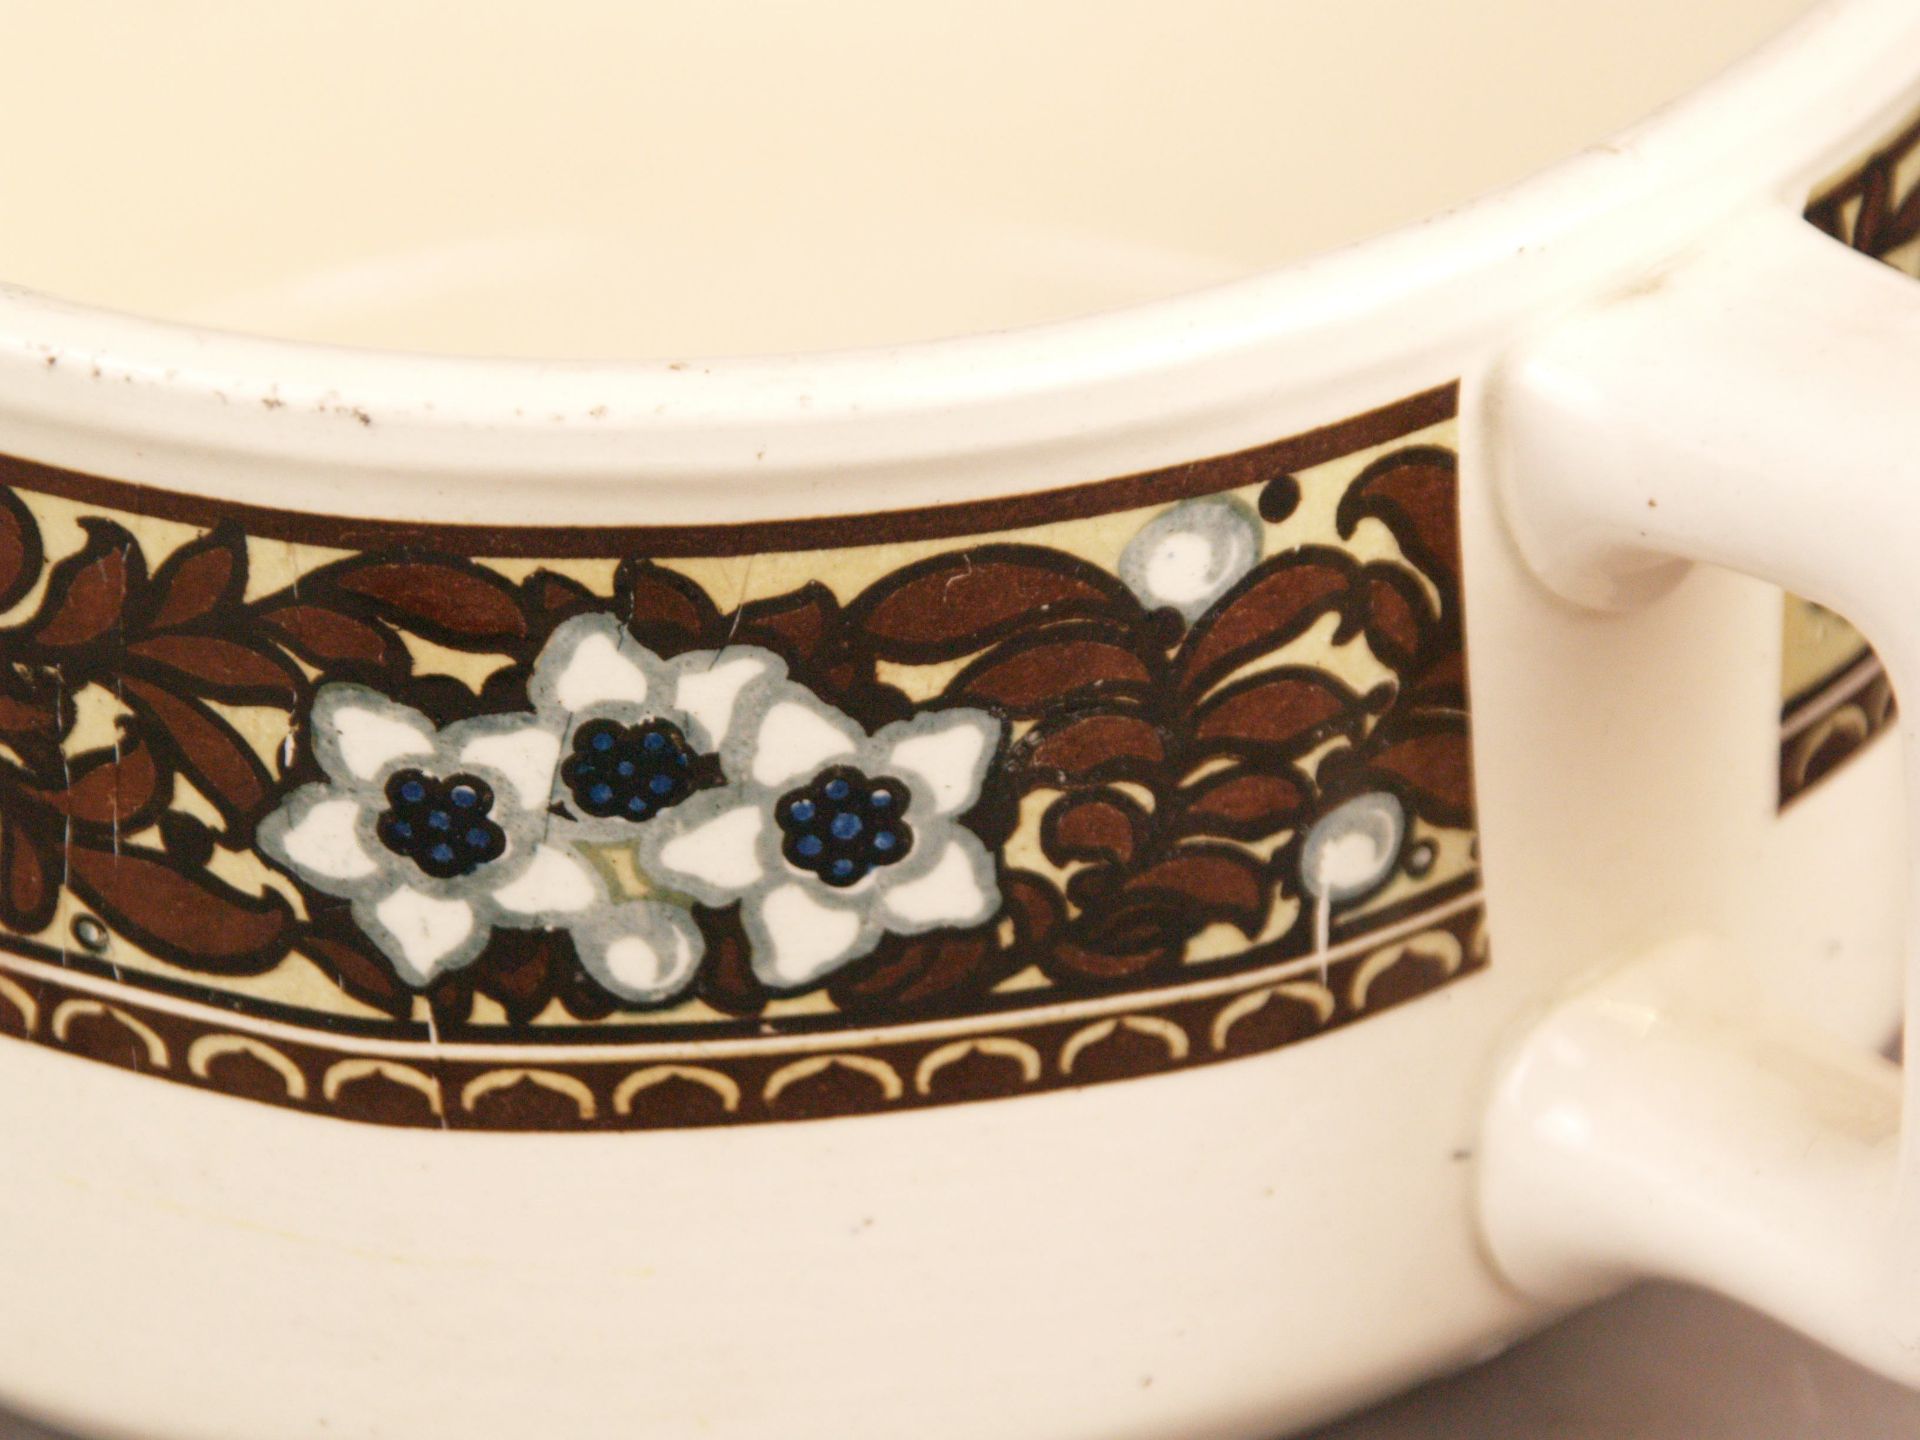 Nachtgeschirr - Villeroy & Boch, Keramik, heller Scherben, cremeweiß glasiert, umlaufend polychrom - Bild 4 aus 6